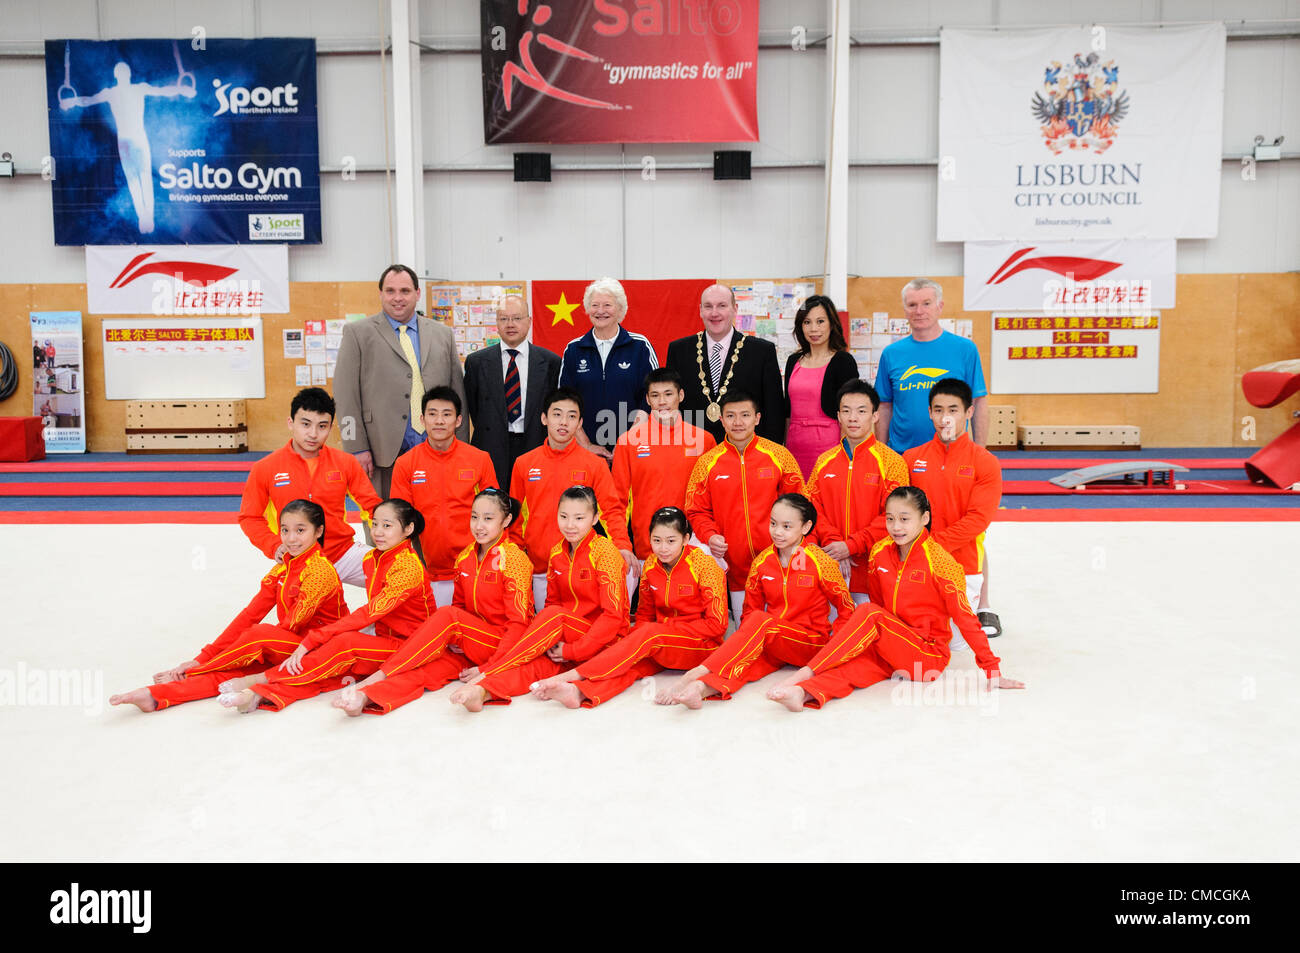 Lisburn, 18/07/2012 - L'équipe de gymnastique chinoise pour les Jeux Olympiques de 2012 à Londres à Lisburn, Irlande du Nord Banque D'Images